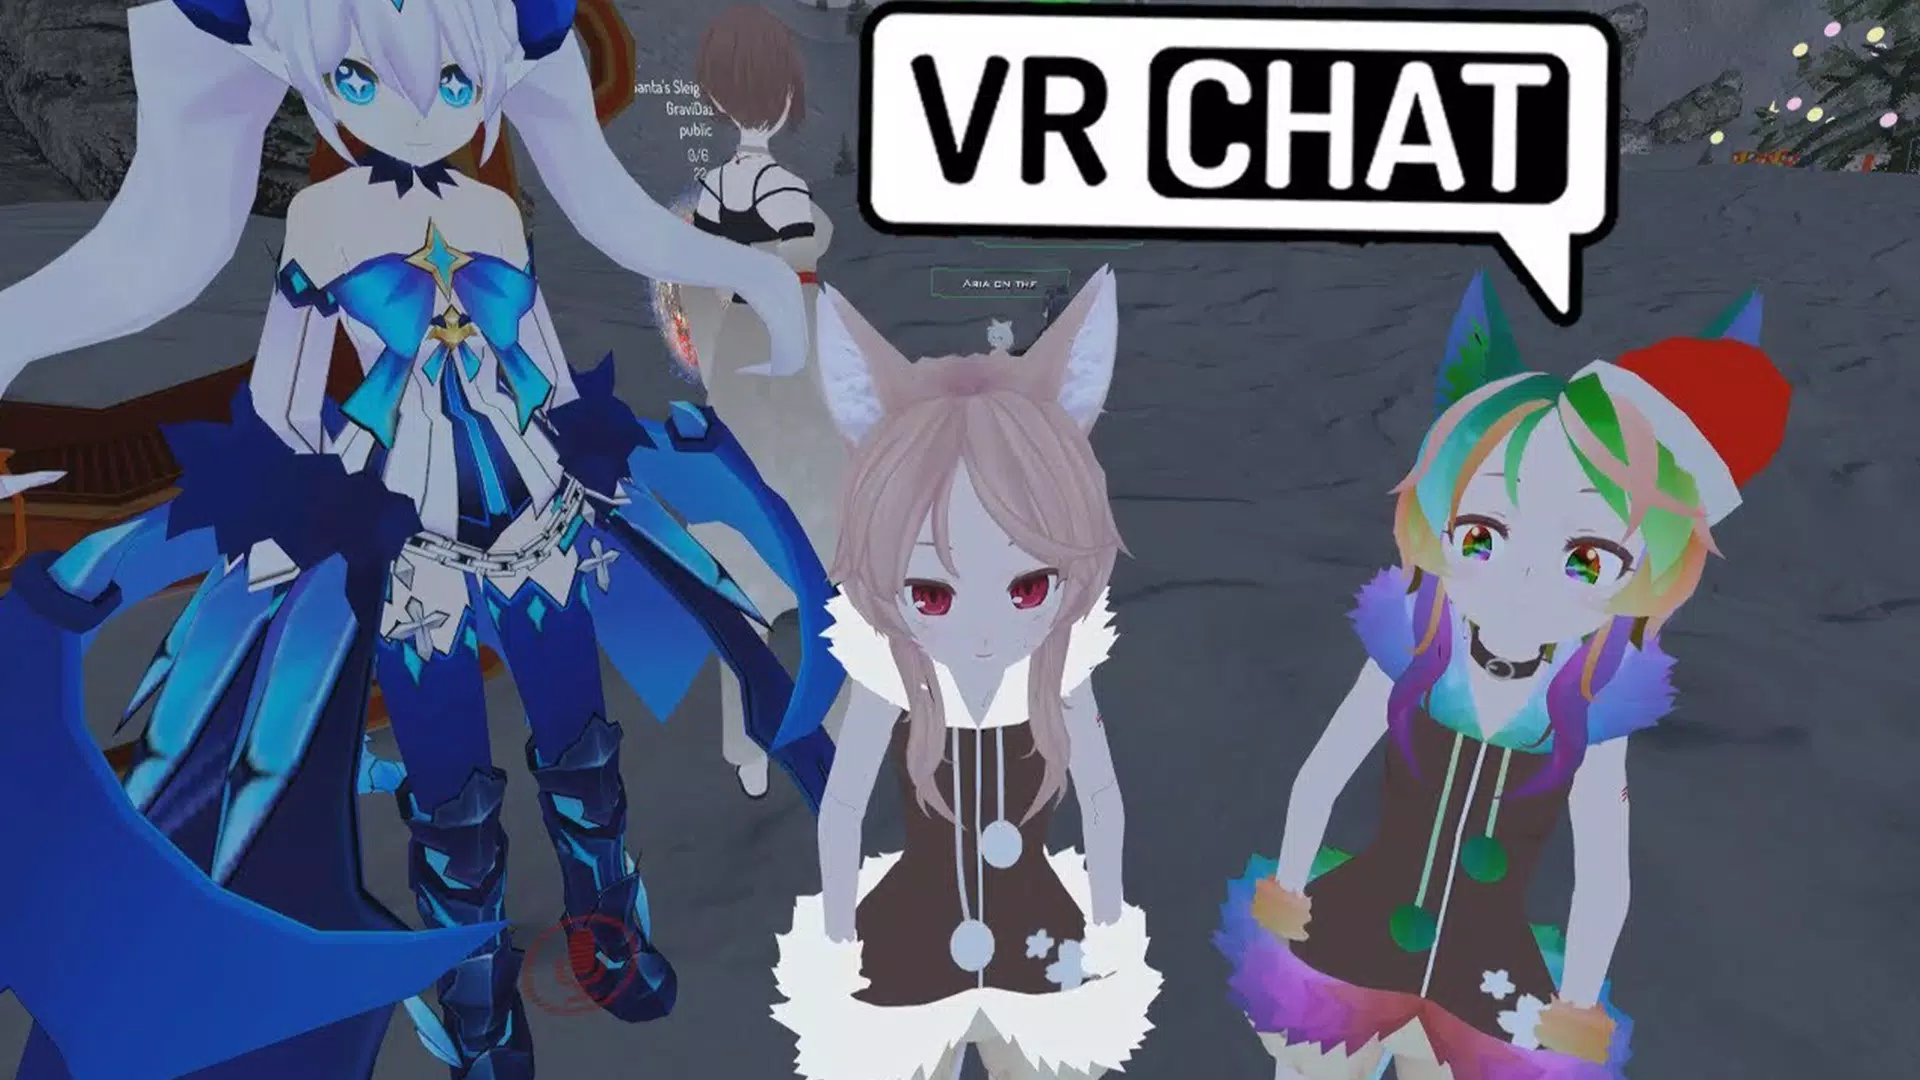 Tải xuống avatar VRChat cho Android: Hãy sẵn sàng cho một trải nghiệm VR tuyệt vời trên thiết bị di động của bạn với VRChat cho Android! Tải xuống avatar của riêng bạn ngay bây giờ và khám phá thế giới ảo đầy màu sắc của VRChat.